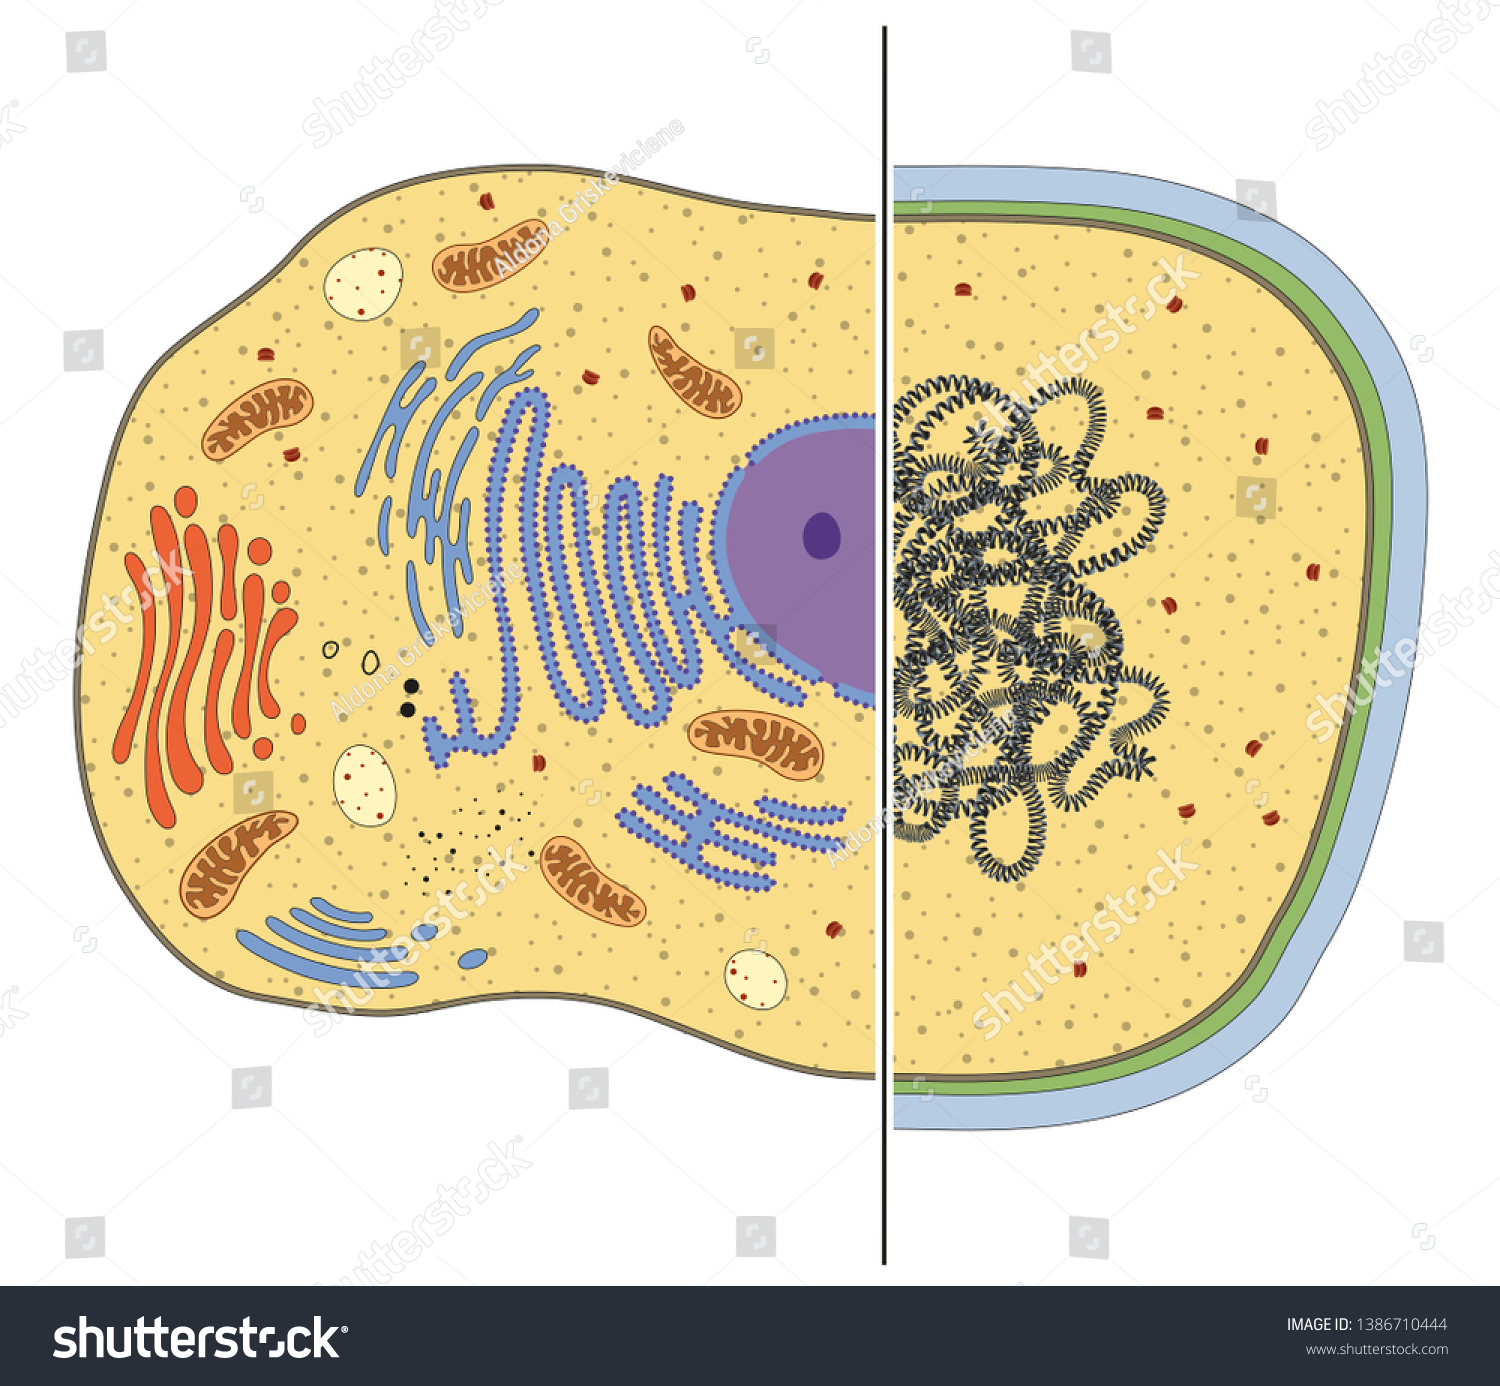 真核細胞と原核細胞のイラスト 違い のイラスト素材